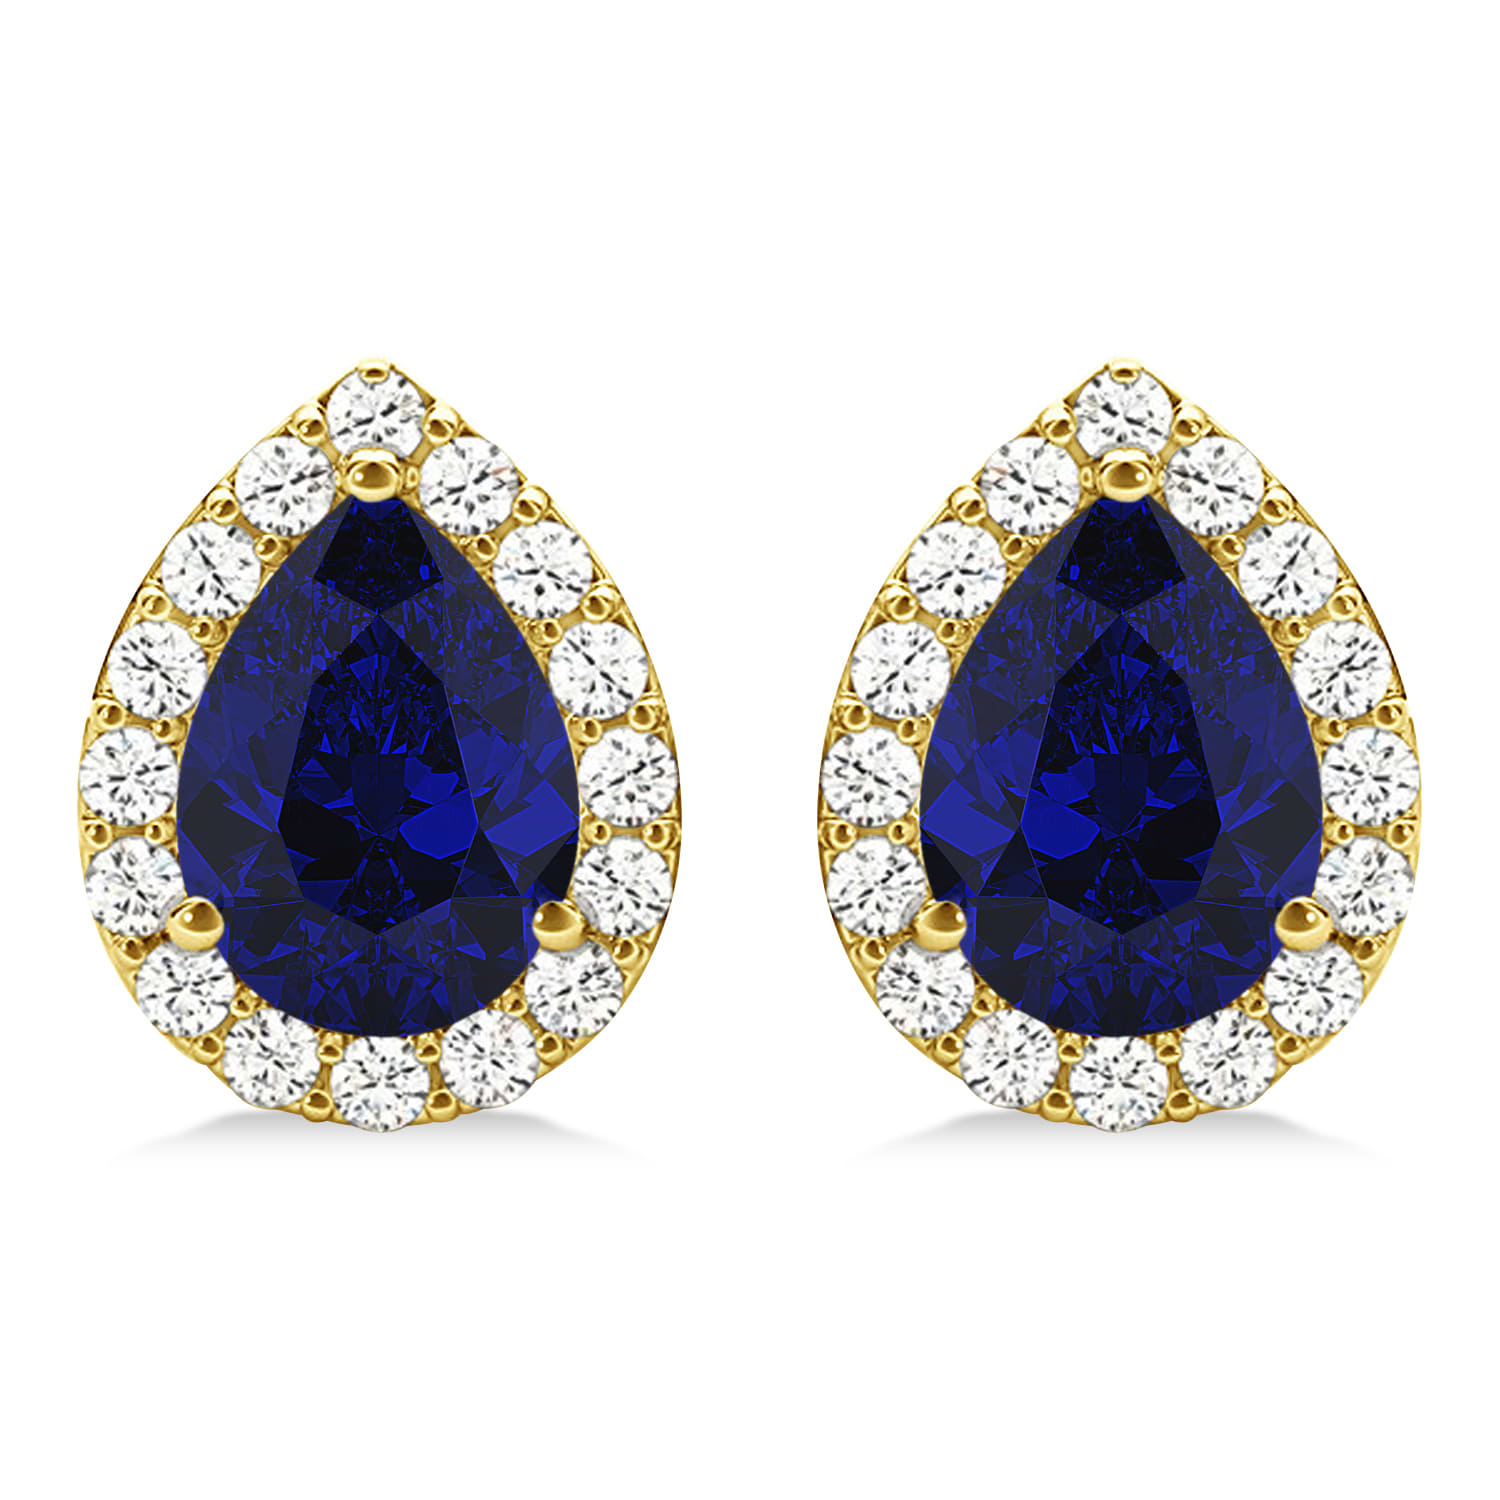 Teardrop Blue Sapphire & Diamond Halo Earrings 14k Yellow Gold (1.74ct)